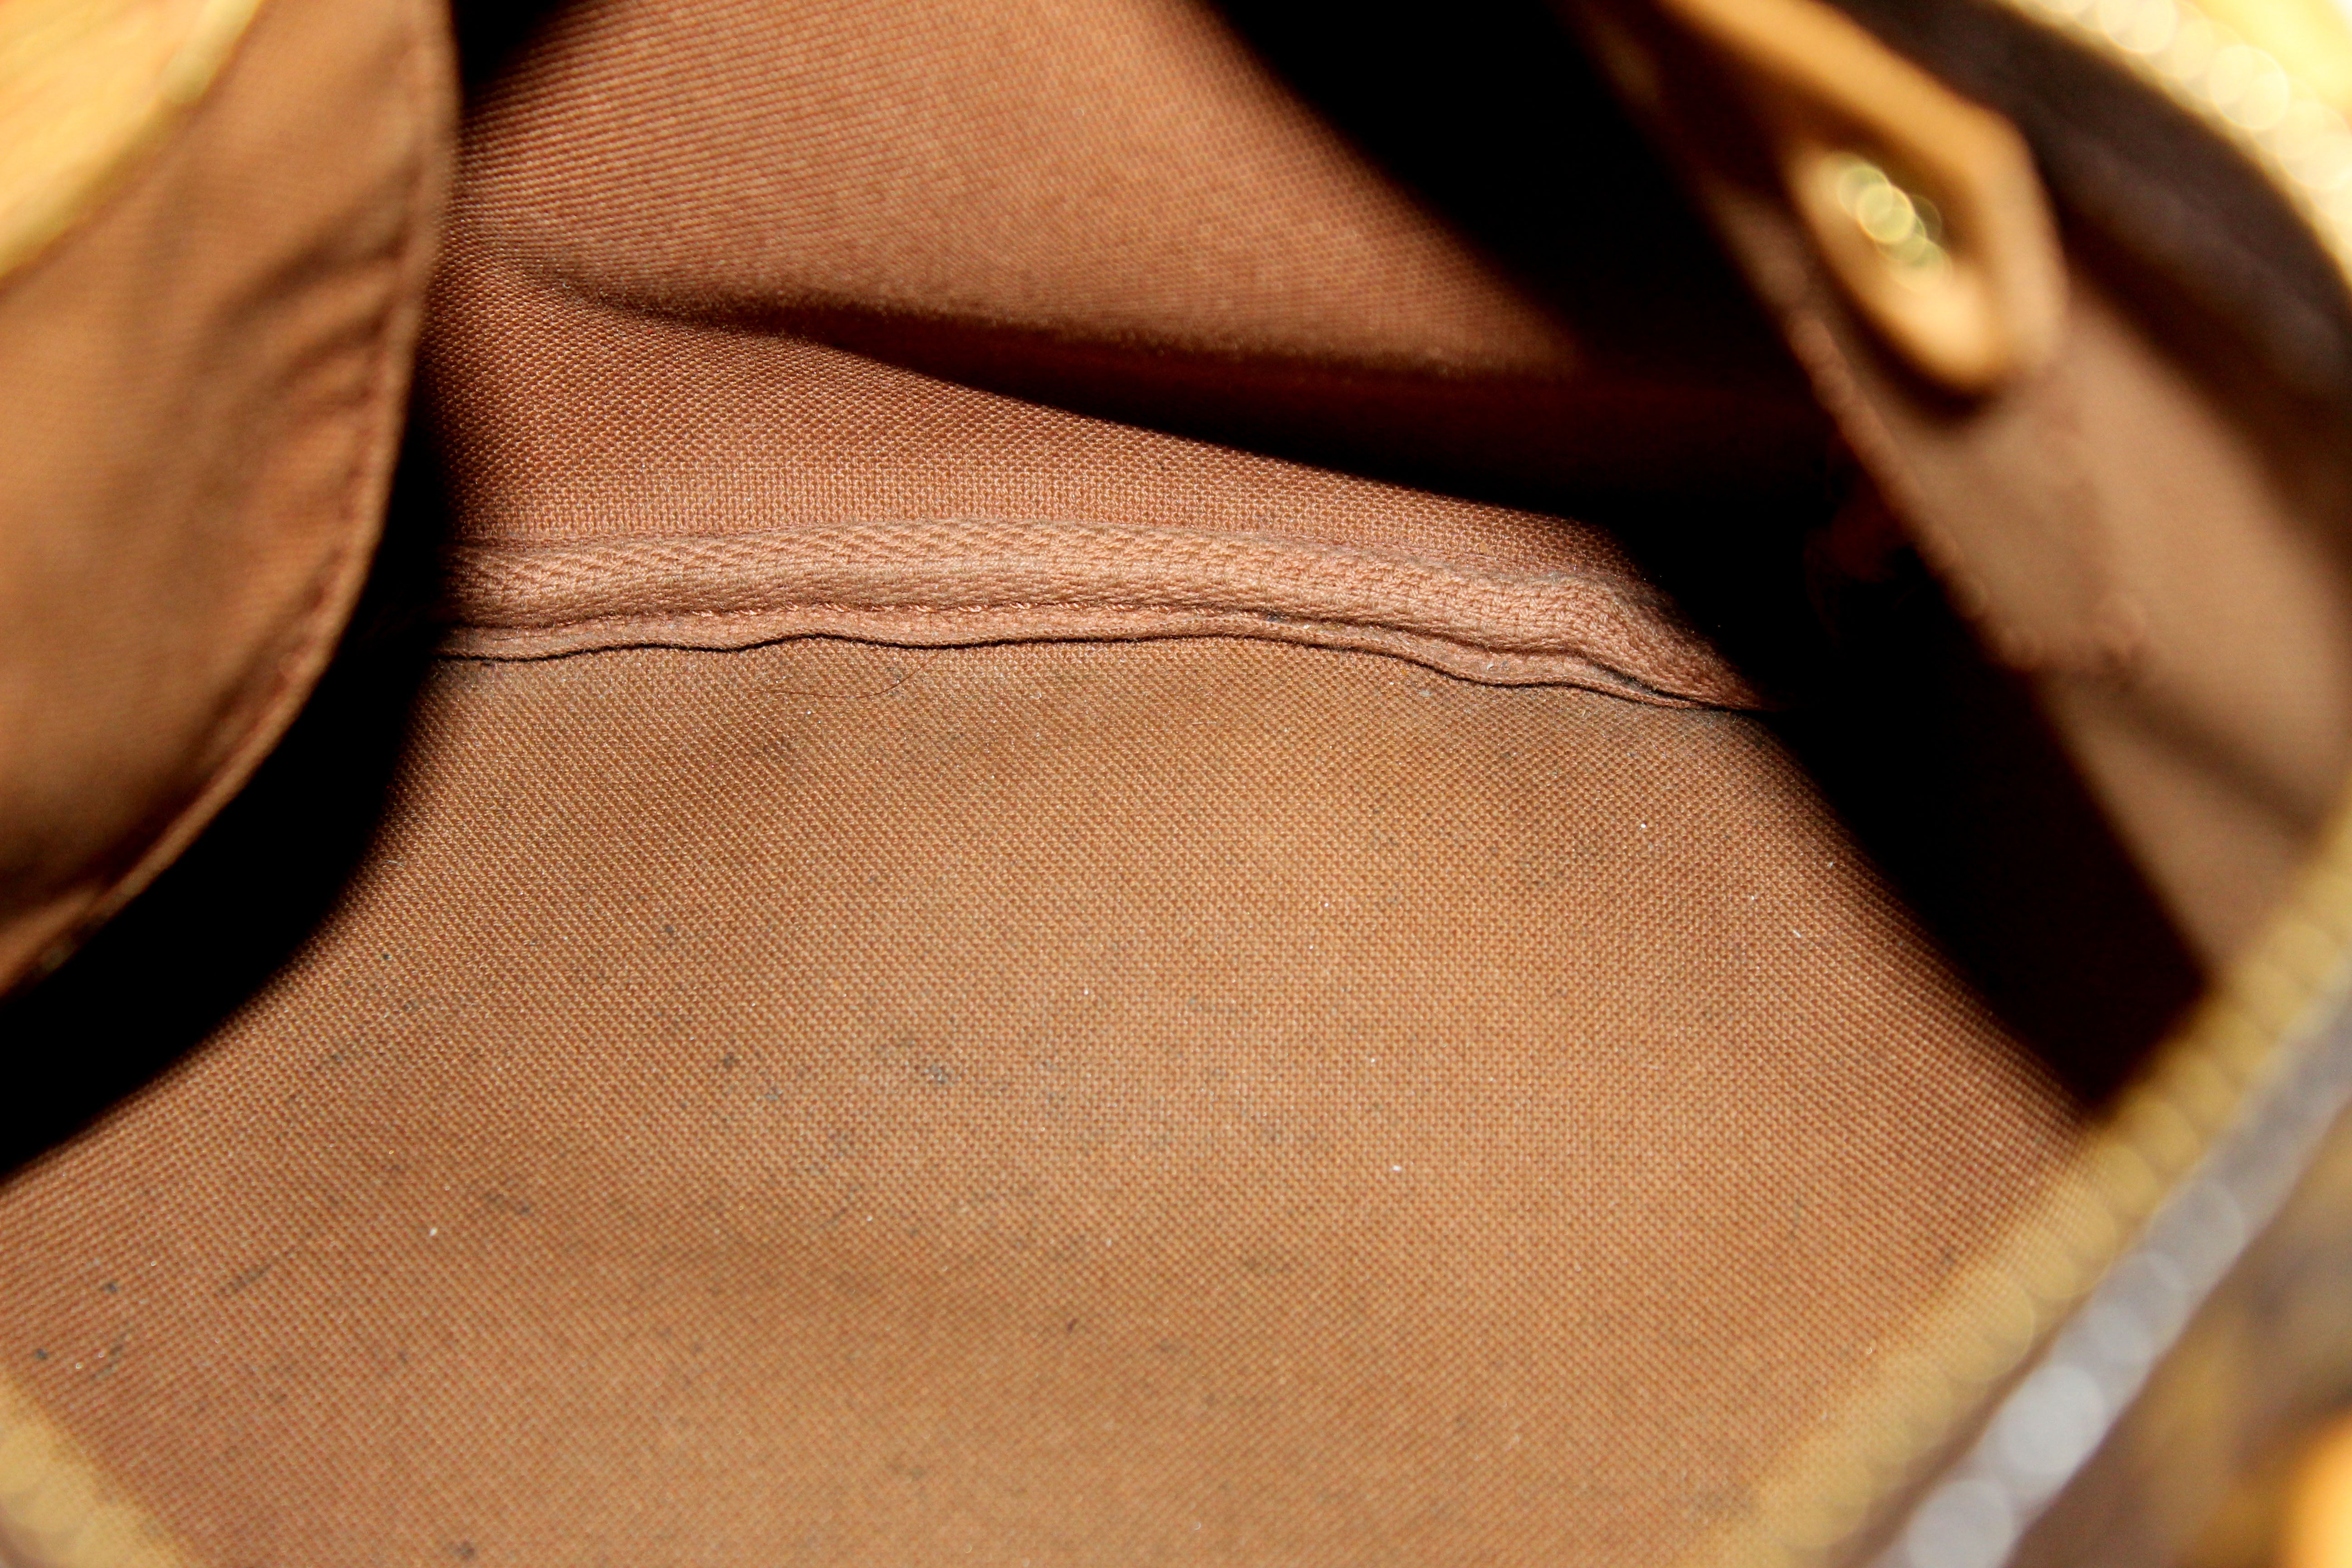 Authentic Louis Vuitton Classic Monogram Speedy 25 Handbag